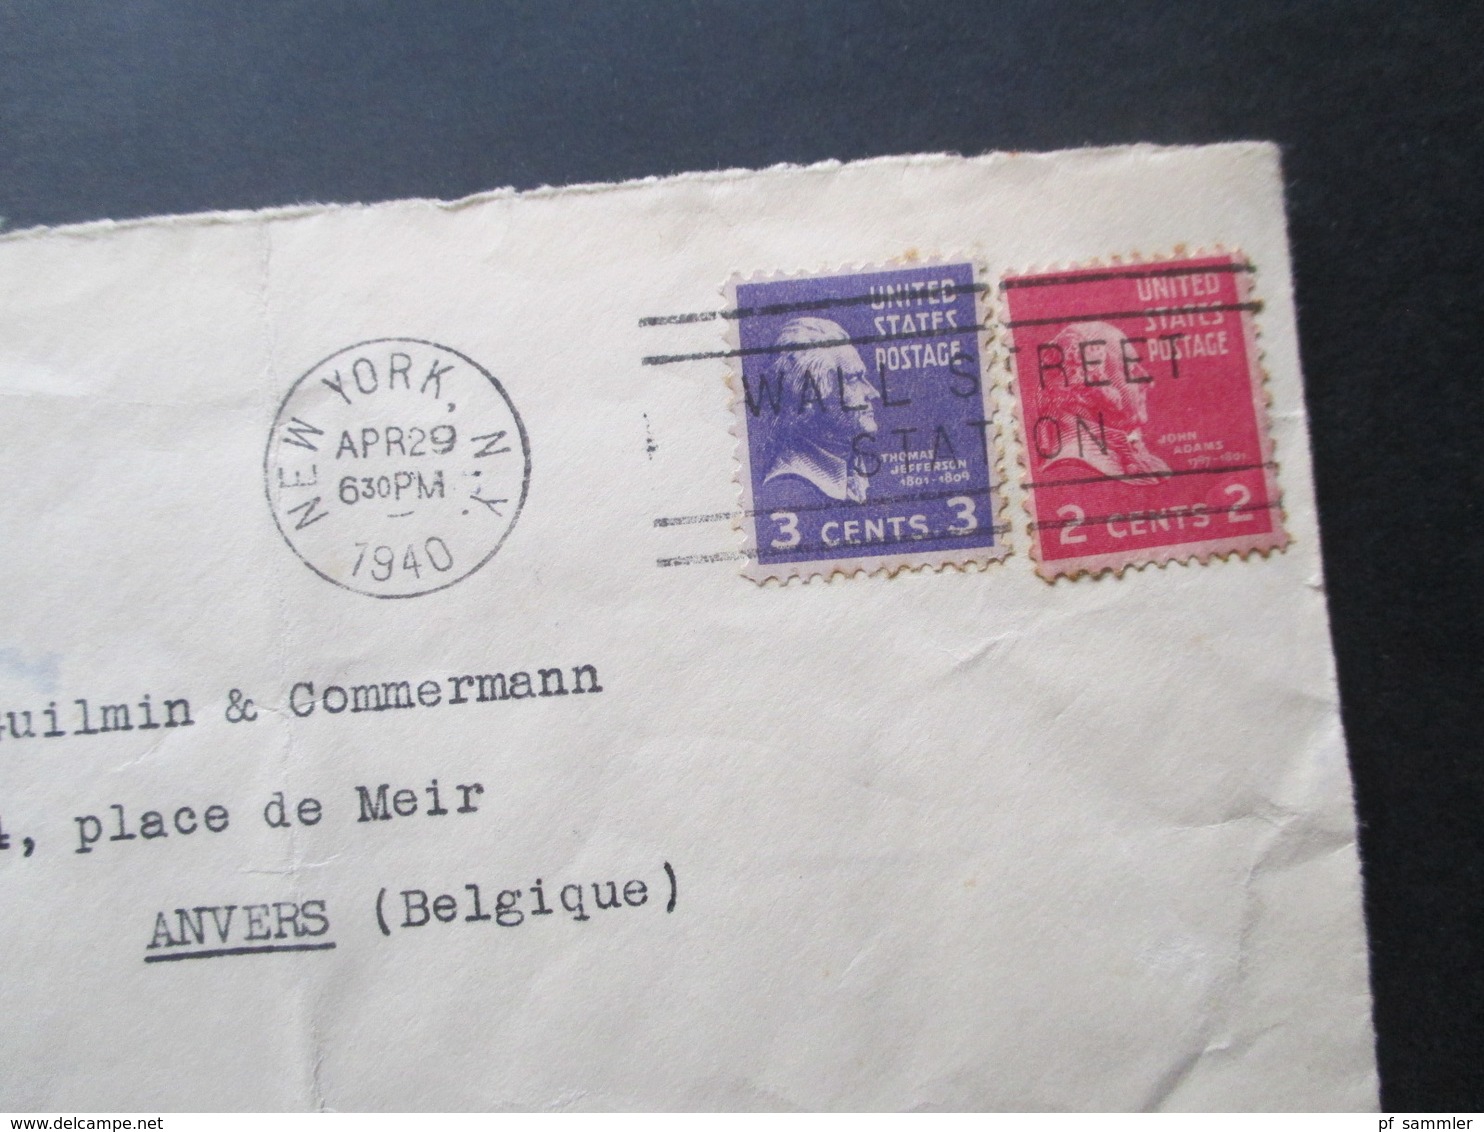 USA 1940 Zensurbeleg New York - Anvers Belgien Opened By Examiner 5094 Und OKW Zensur Streifen Und Zensurstempel - Briefe U. Dokumente